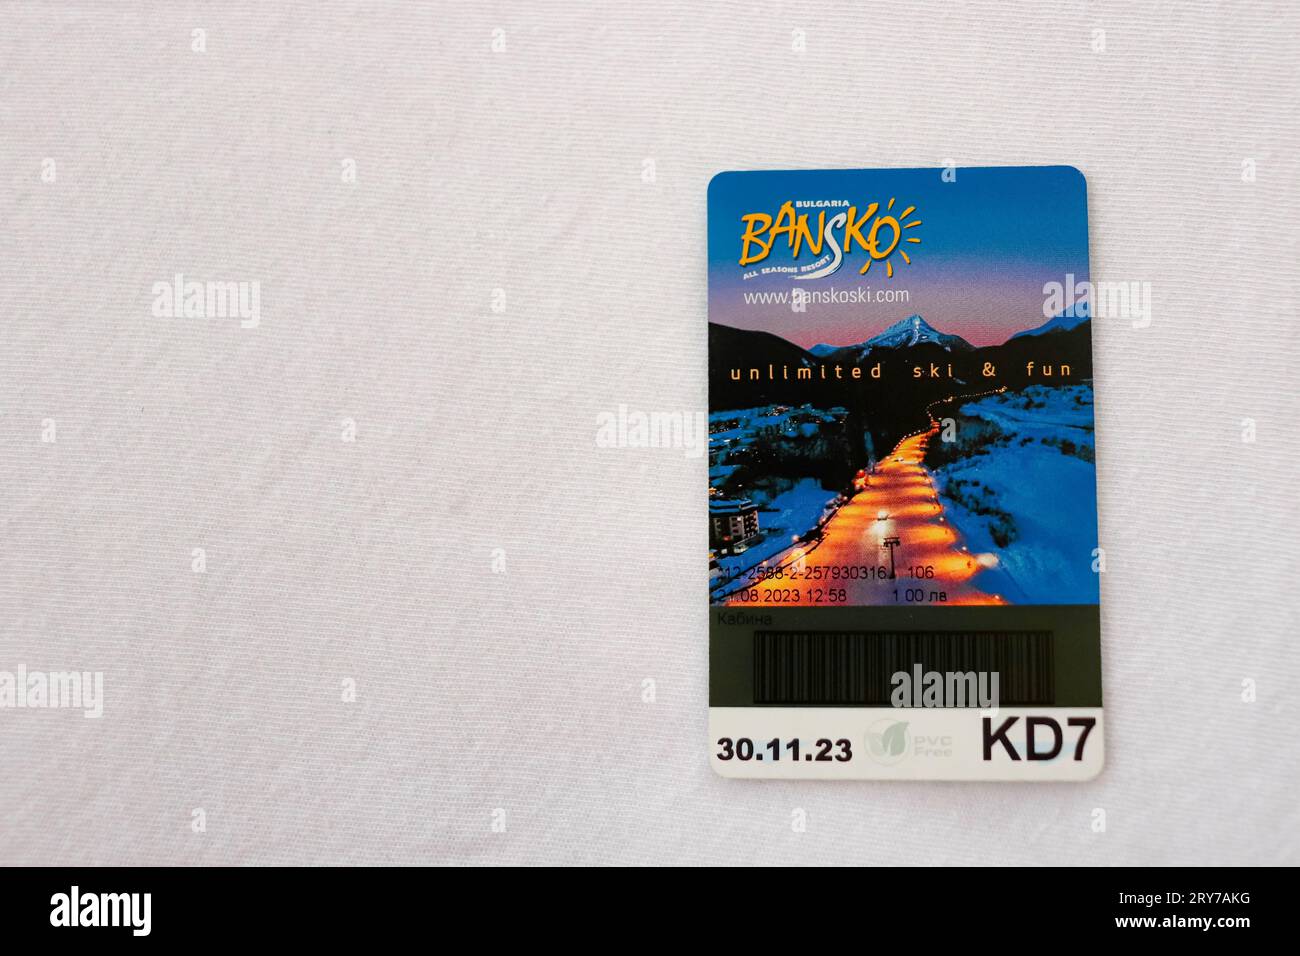 Eintrittskarte für Bansko Ski, Gondellift Attraktionen auf weißem Hintergrund Stockfoto